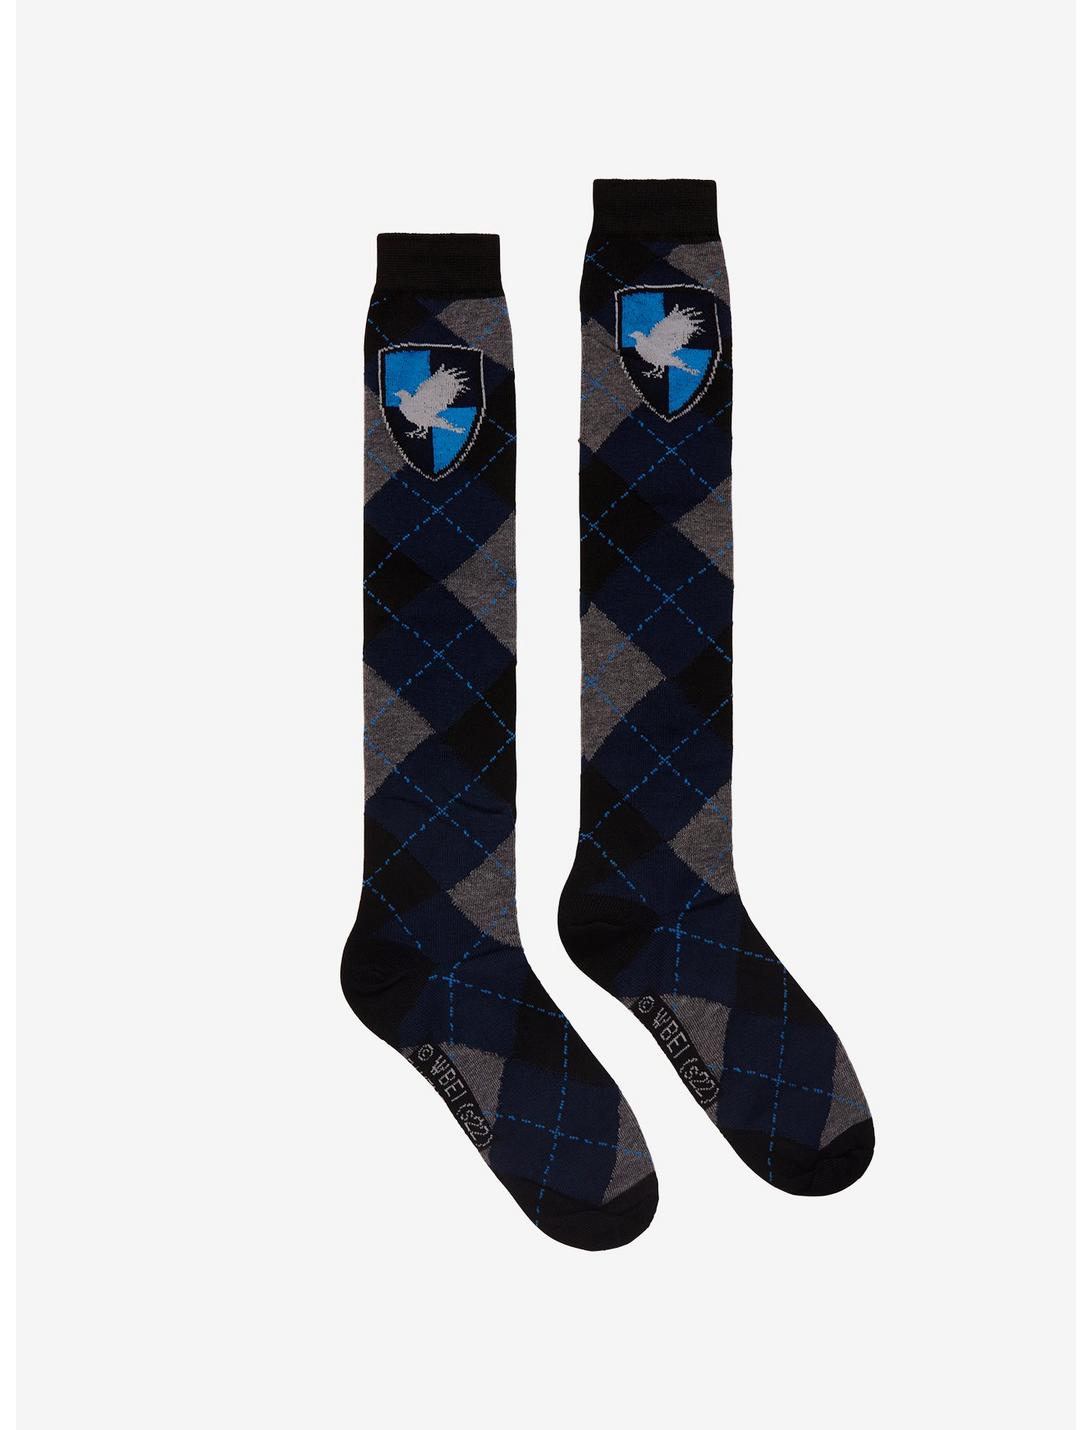 Harry Potter Ravenclaw Argyle Knee-High Socks, , hi-res